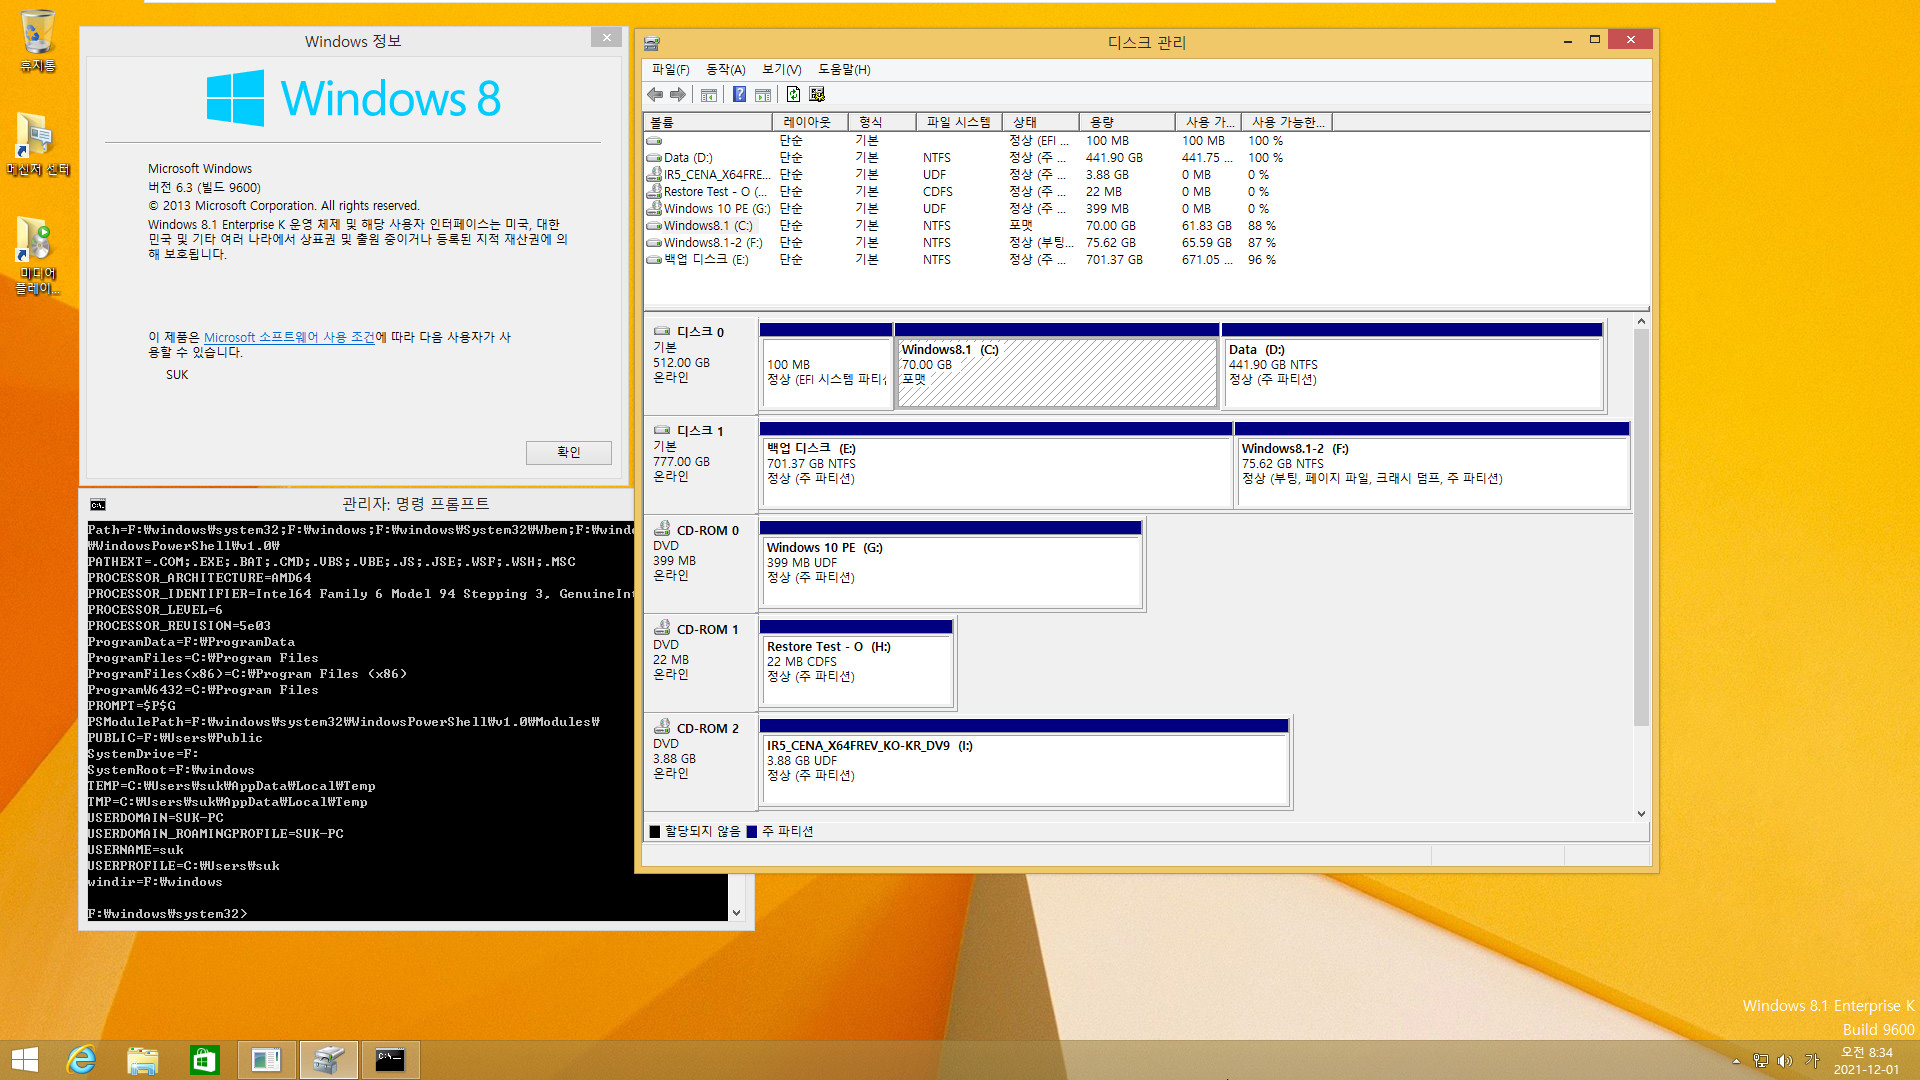 Windows 8.1은 여전히 같은 컴퓨터에서 다른 파티션에 복원하면 기존 윈도우와 복원한 윈도우 2개를 동시에 사용하는군요. 기존 C드라이브 문자만 삭제하면 정상 부팅됩니다 2021-12-01_083415.jpg